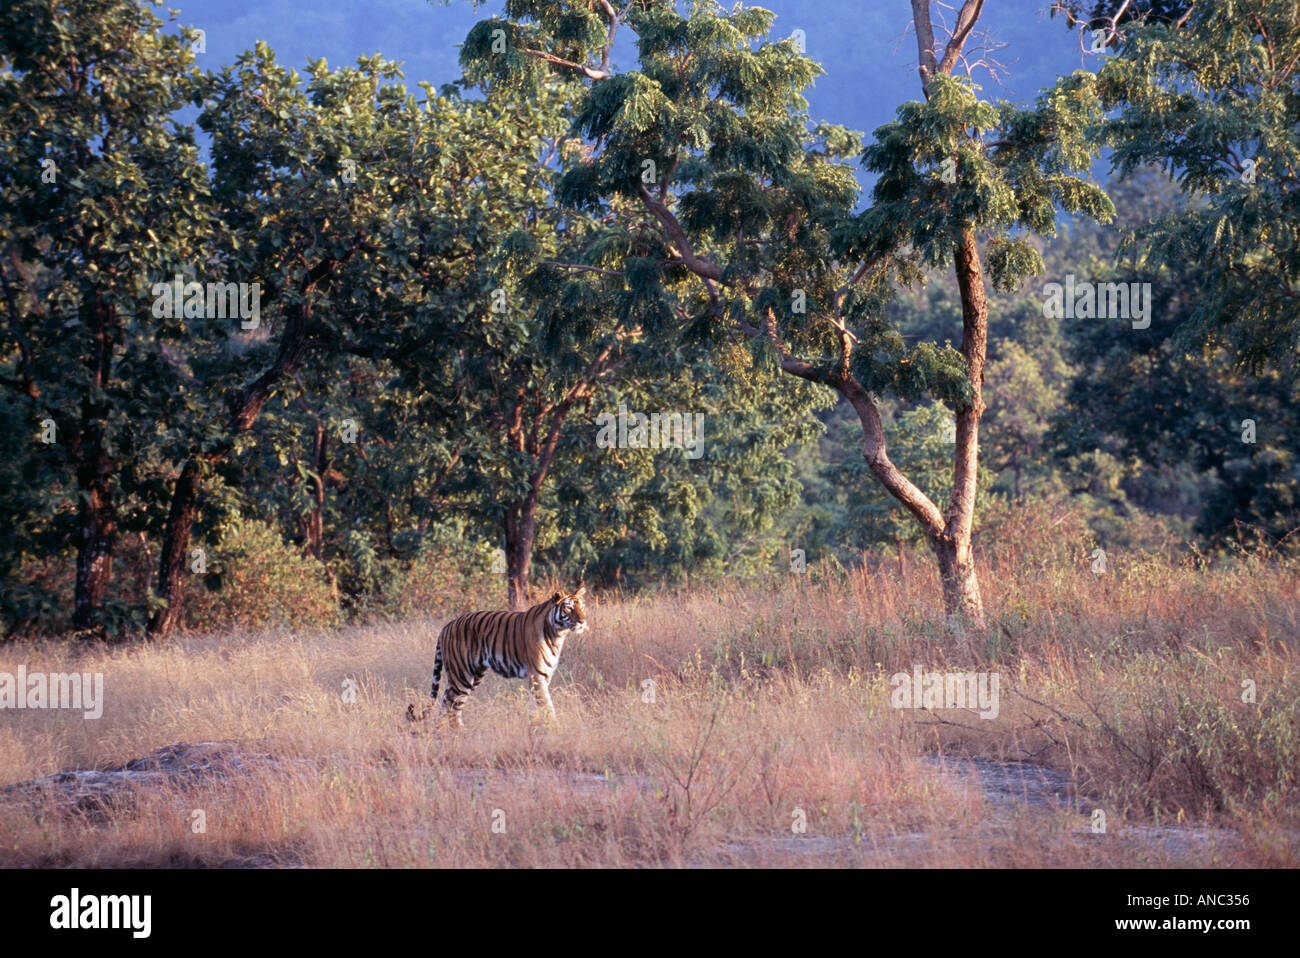 Bengal Tiger Panthera tigris adult male walking across meadow in Bandhavgarh NP India Stock Photo